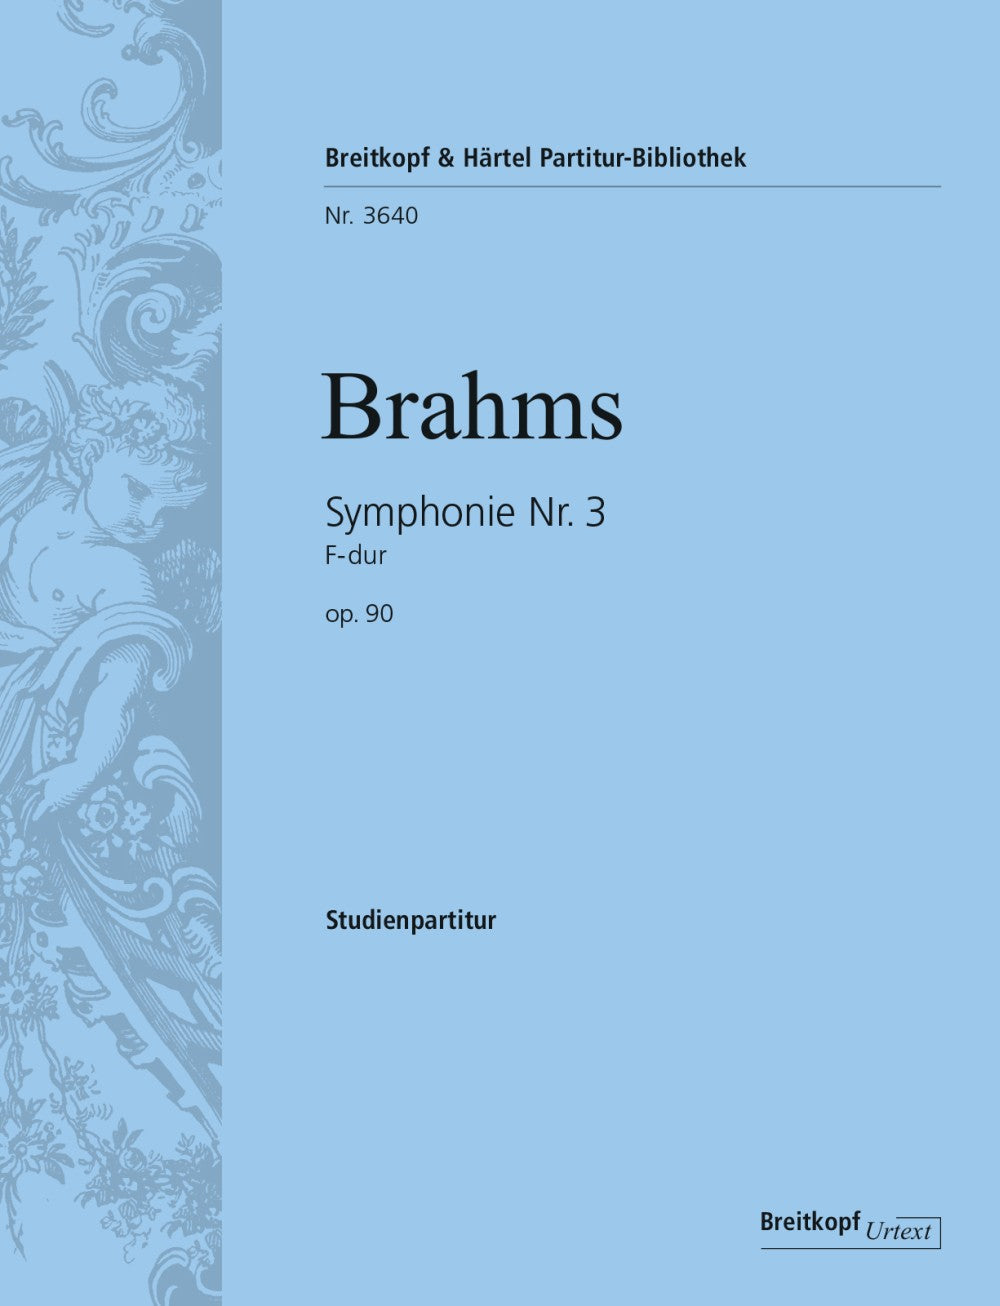 Brahms Symphony No. 3 in F major Op. 90 - Study Score